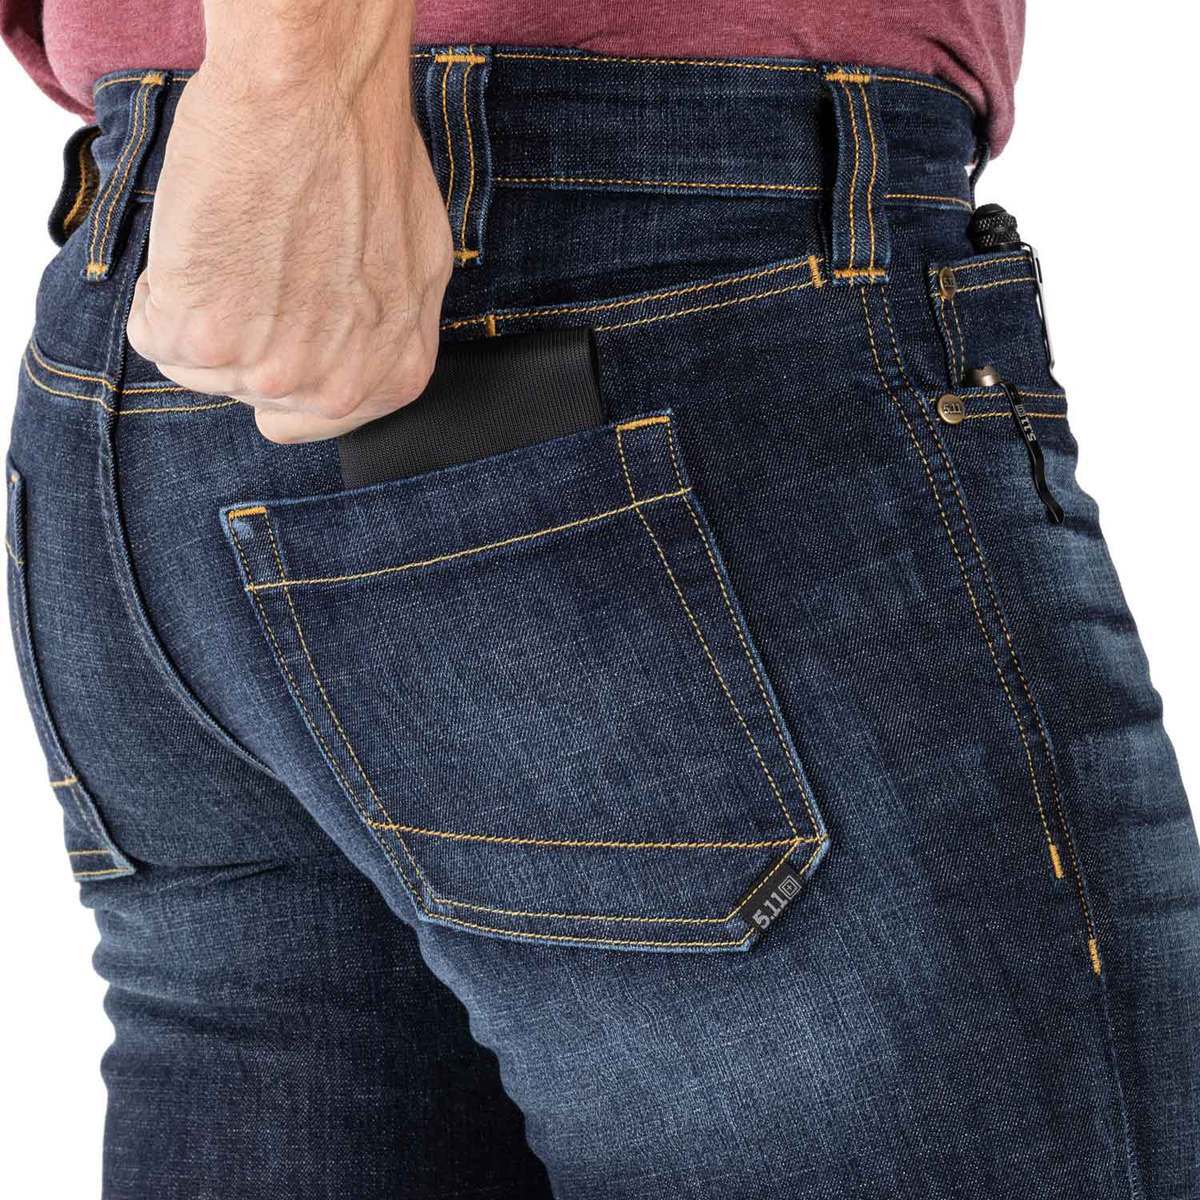 5.11 Men's Defender Flex Straight Fit Tactical Jeans - Dark Wash Indigo ...